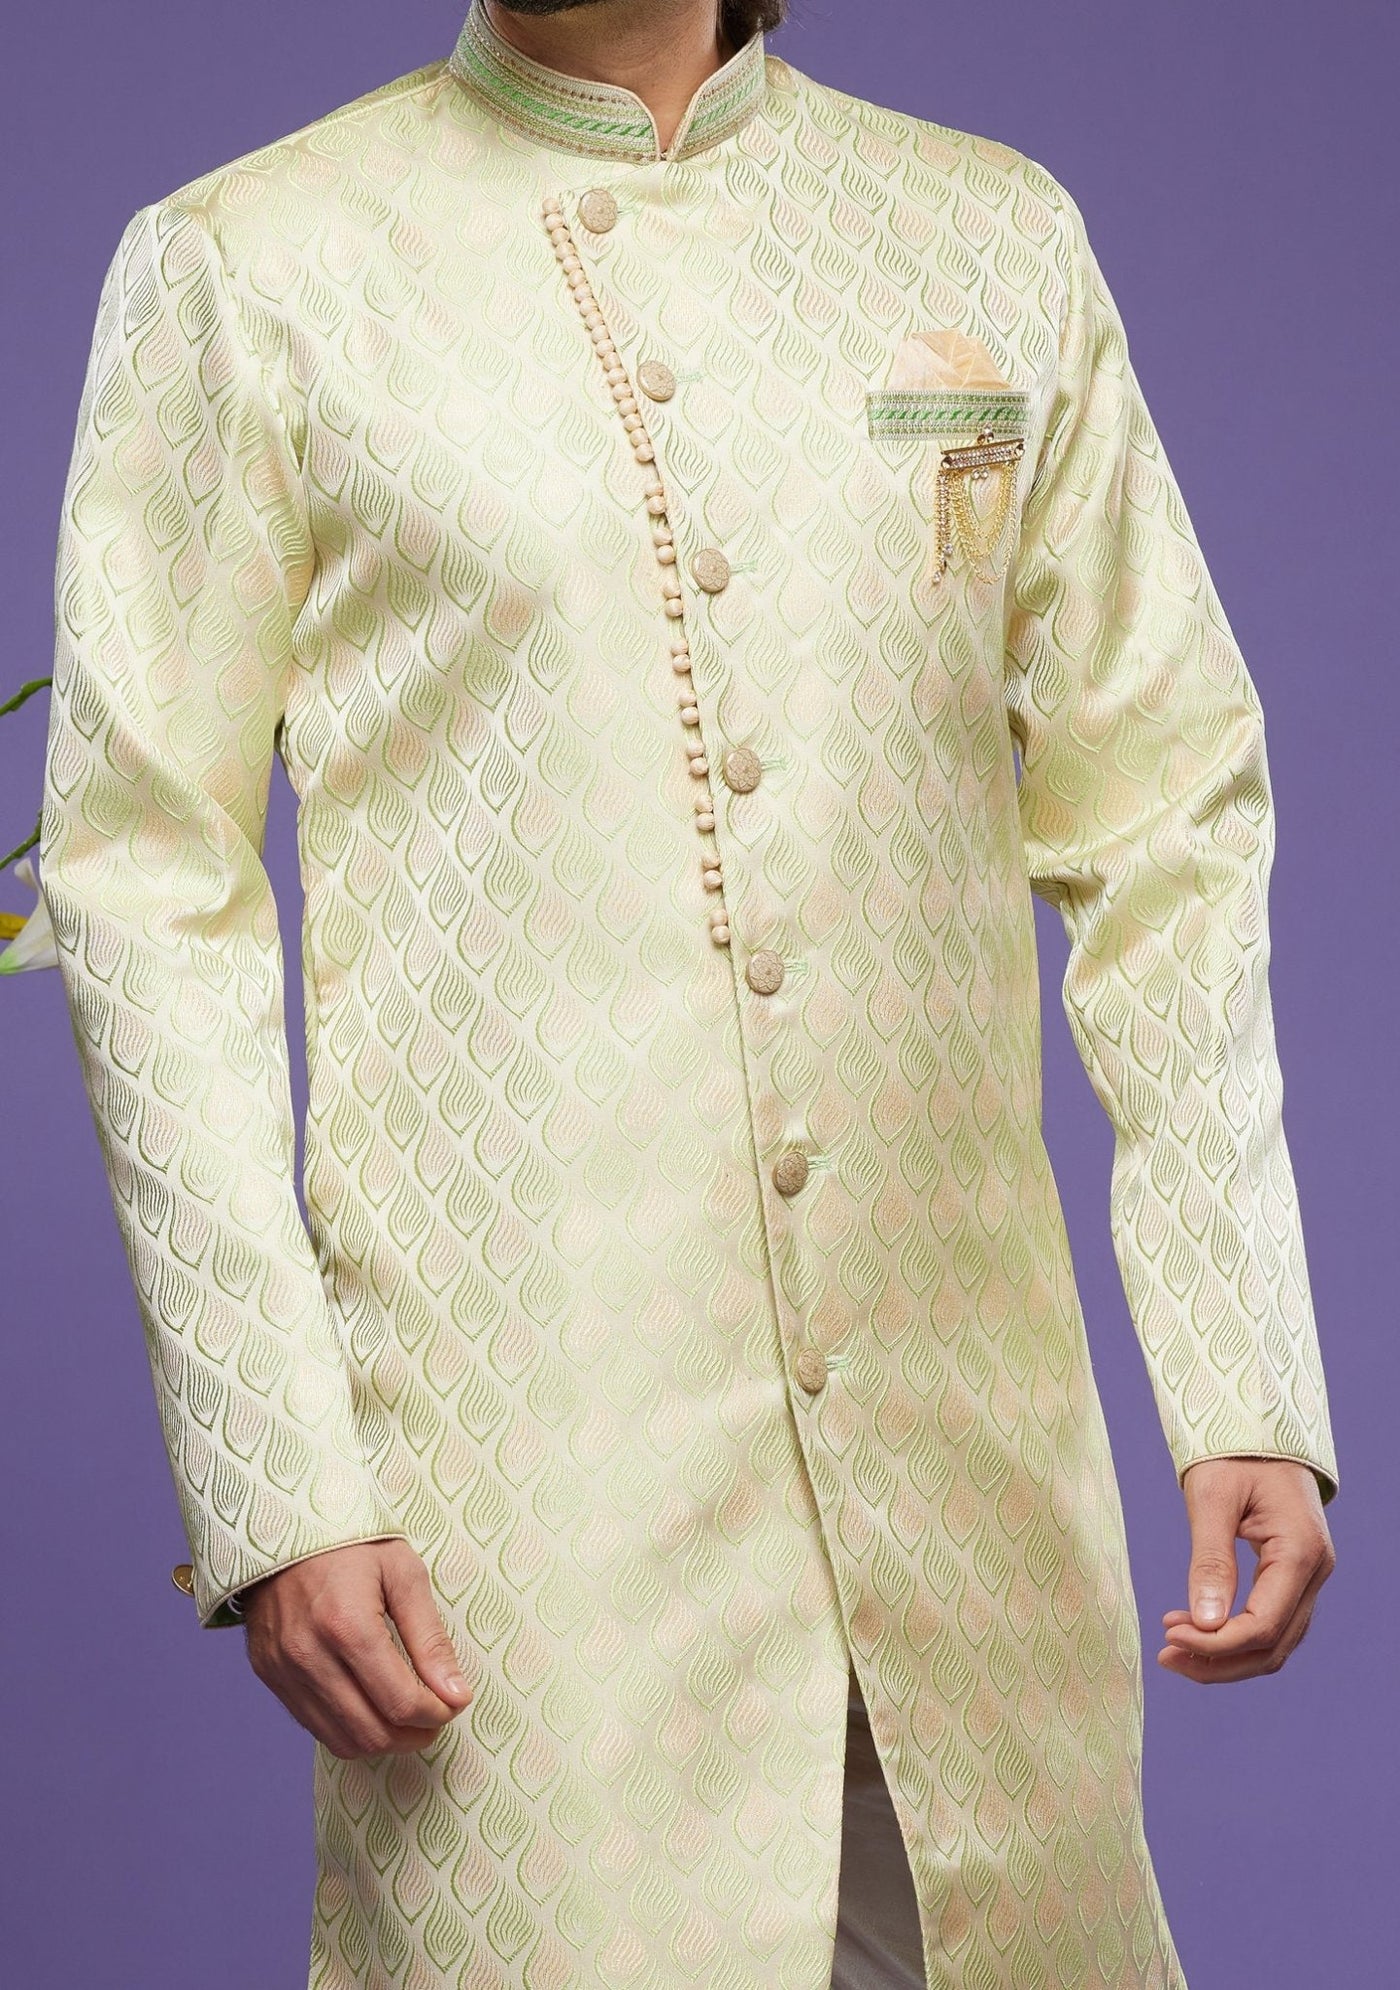 Men's Semi Indo Western Party Wear Sherwani Suit - db23863